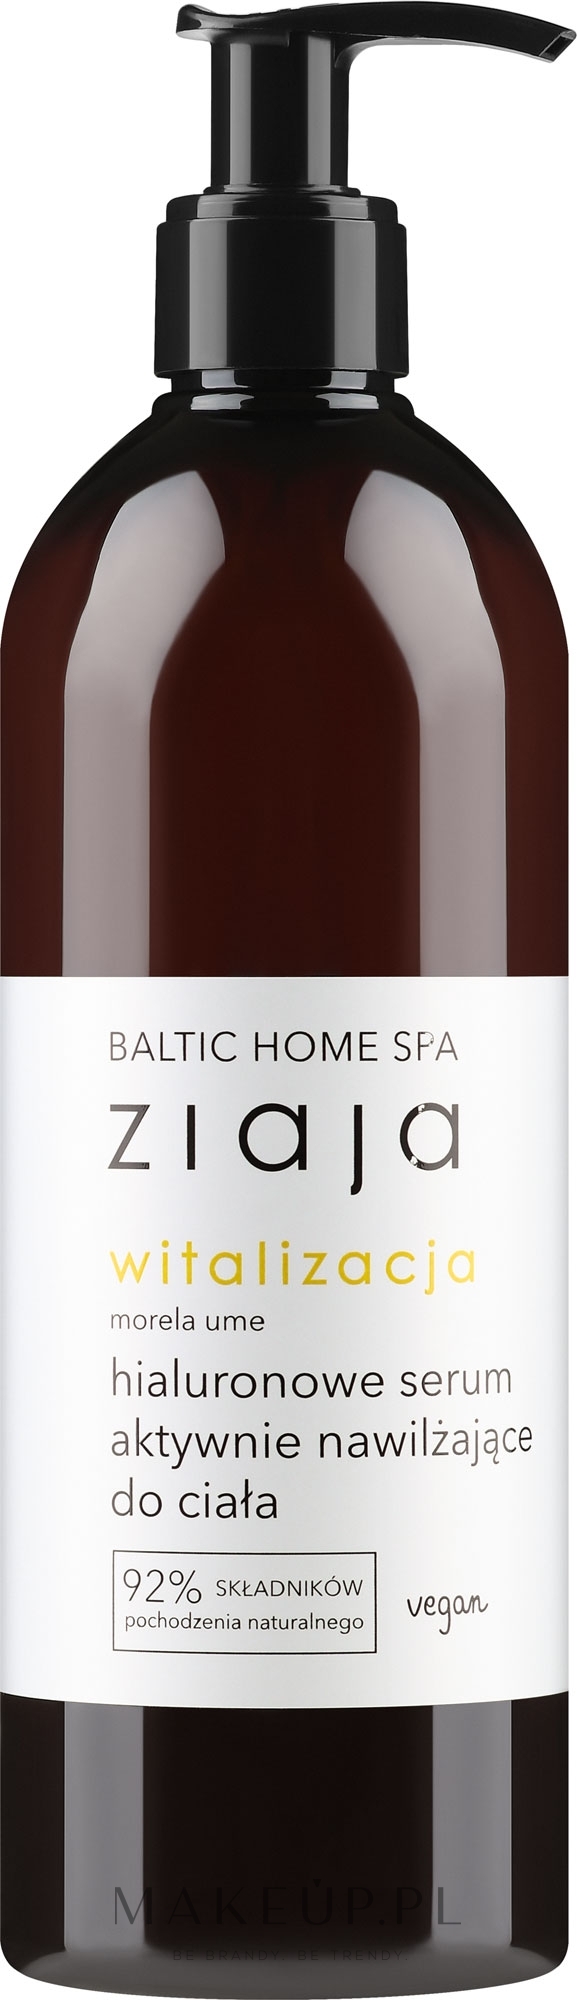 Hialuronowe serum aktywnie nawilżające do ciała - Ziaja Baltic Home Spa Witalizacja — Zdjęcie 400 ml